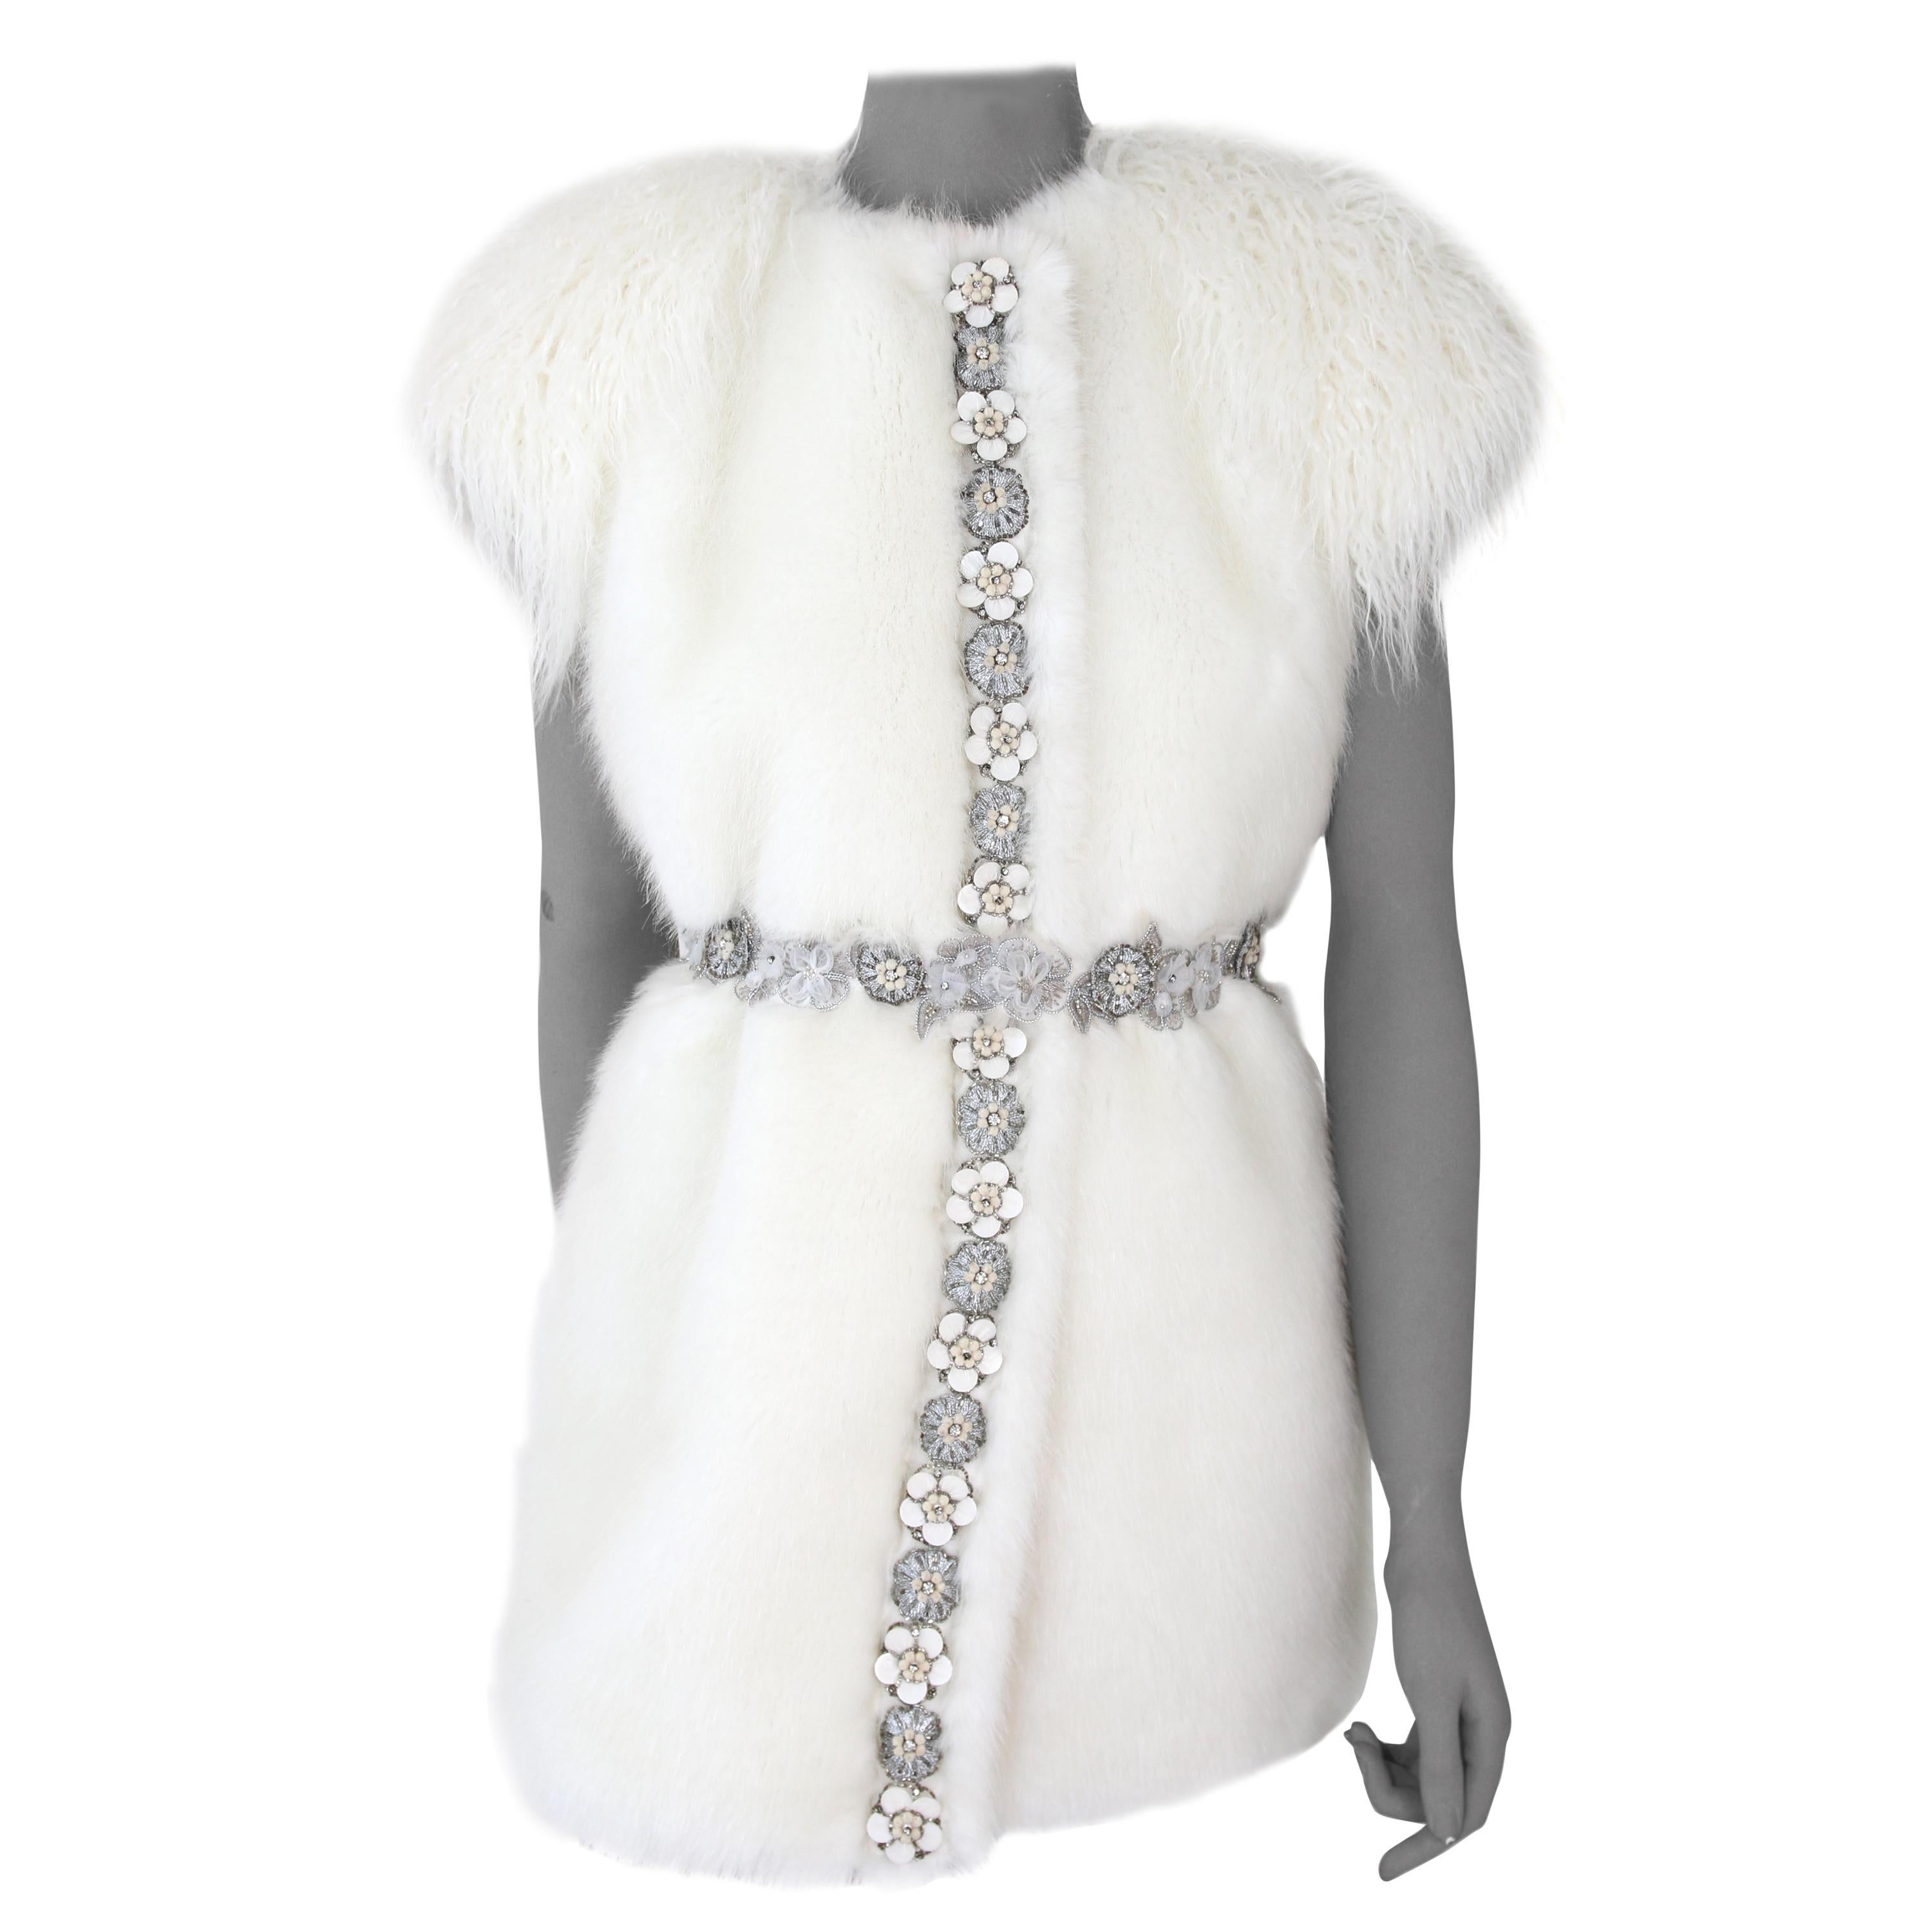 Pelush White Faux Fur Mink Vest with Details - One Size S/M